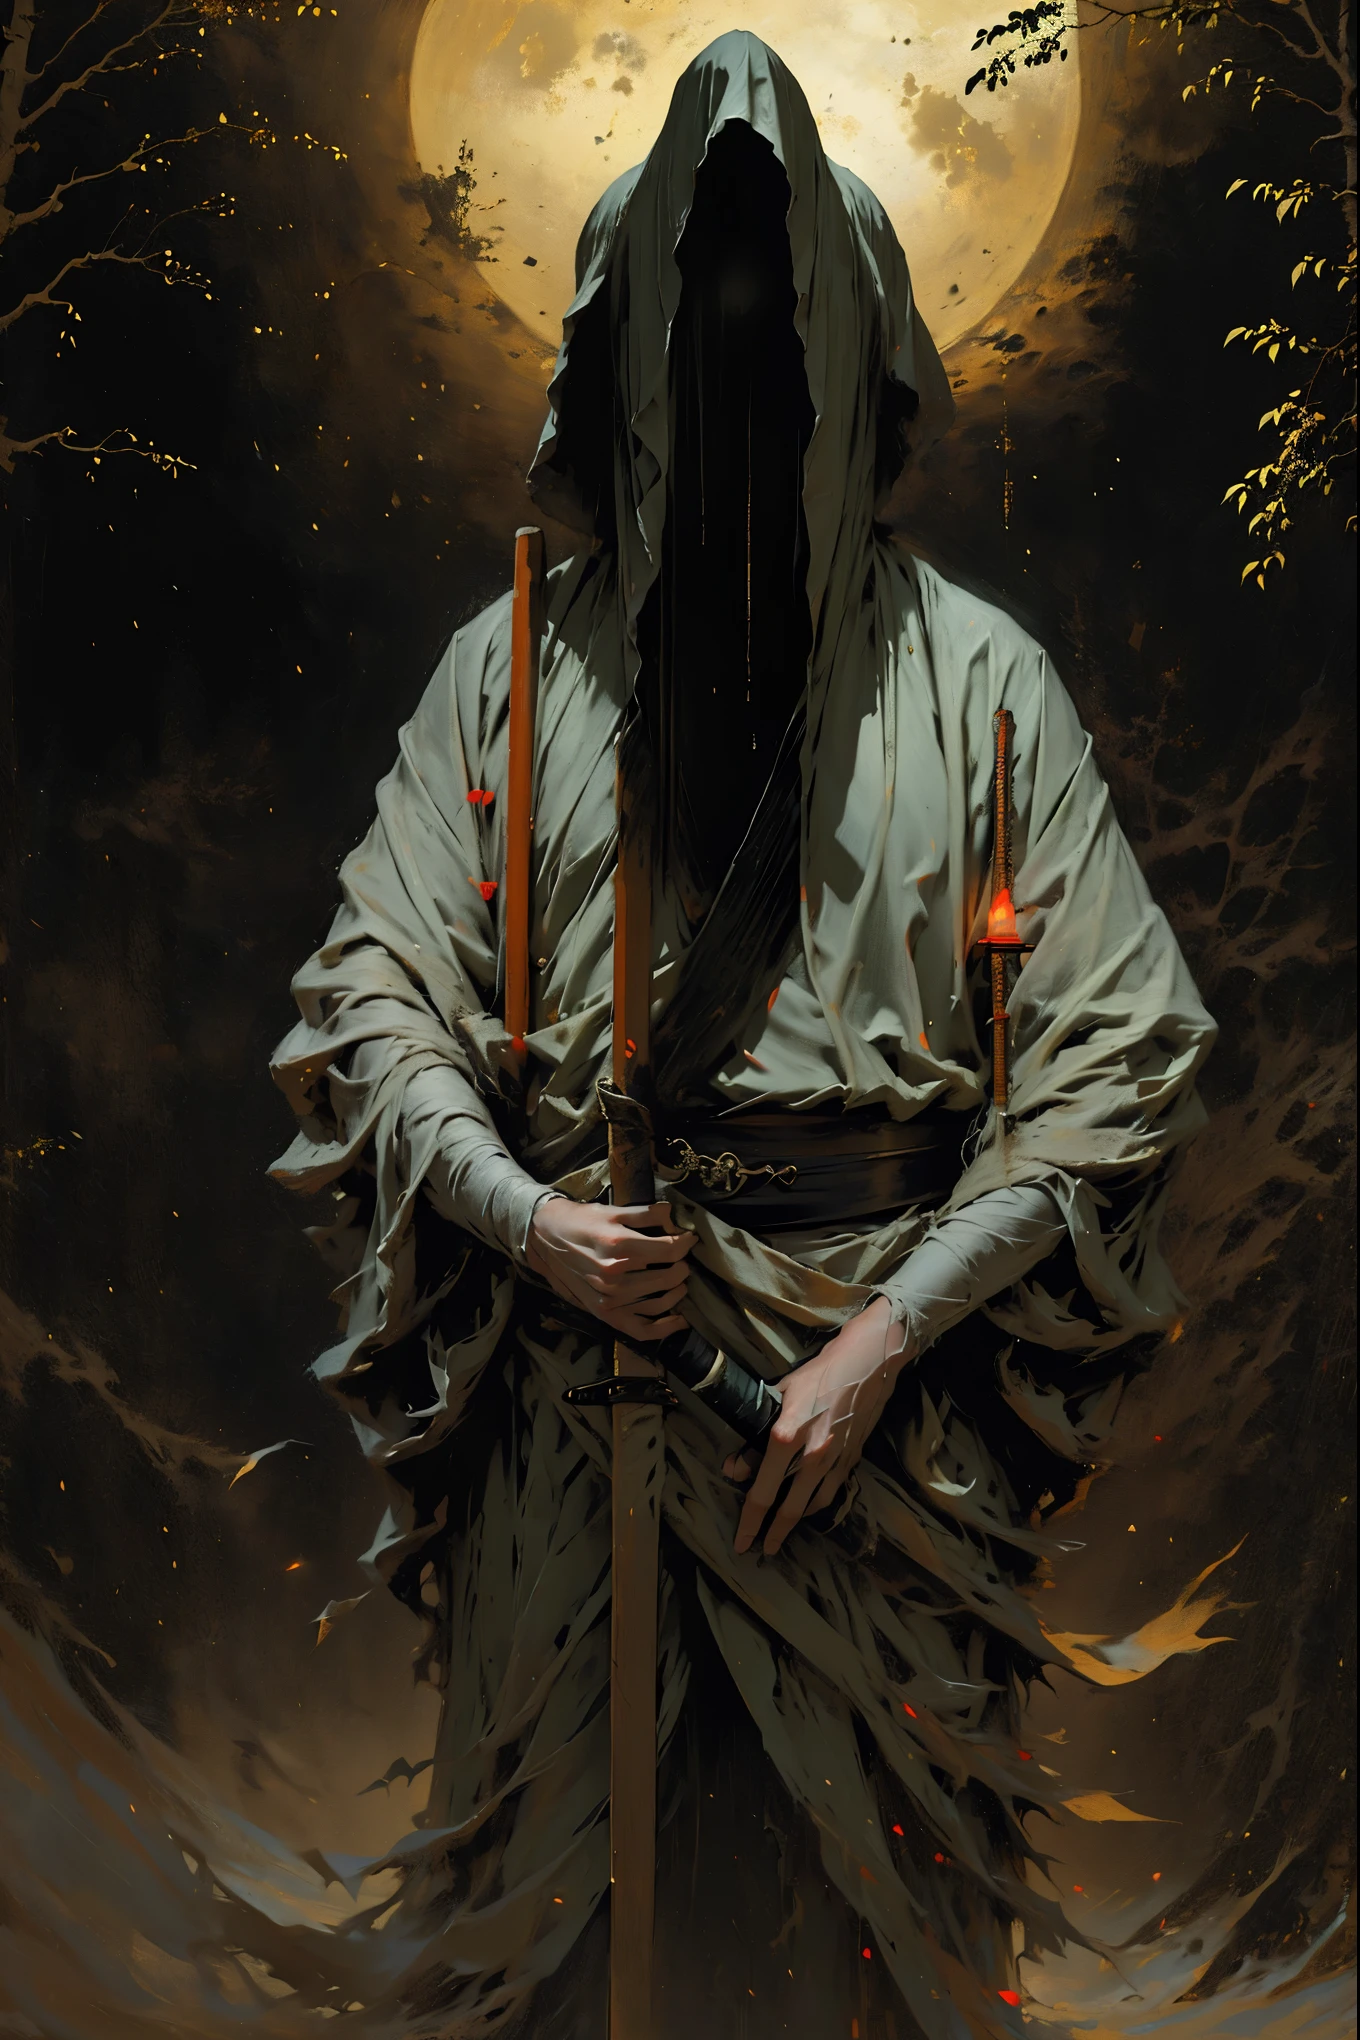 (beste Qualität, 4k, highres, Meisterwerk:1.2), ultra-detailliert, (Realistisch, photoRealistisch, photo-Realistisch:1.37), ein als Samurai verkleideter Mann steht im Regen, Einen Bambushut tragen (scheitern) auf seinem Kopf. Er ist von einem dichten Wald umgeben, lebendig mit den Geräuschen der Natur. Es ist eine mondhelle Nacht, und die Dunkelheit trägt zur geheimnisvollen Atmosphäre bei. Der Mann trägt einen schwarzen Kimono mit neonroten Streifen, die im Dunkeln leuchten, lässt ihn aus der Szene hervorstechen. Sein Schwert (Katana) ist aus der Scheide, einsatzbereit angesichts drohender Katastrophen.